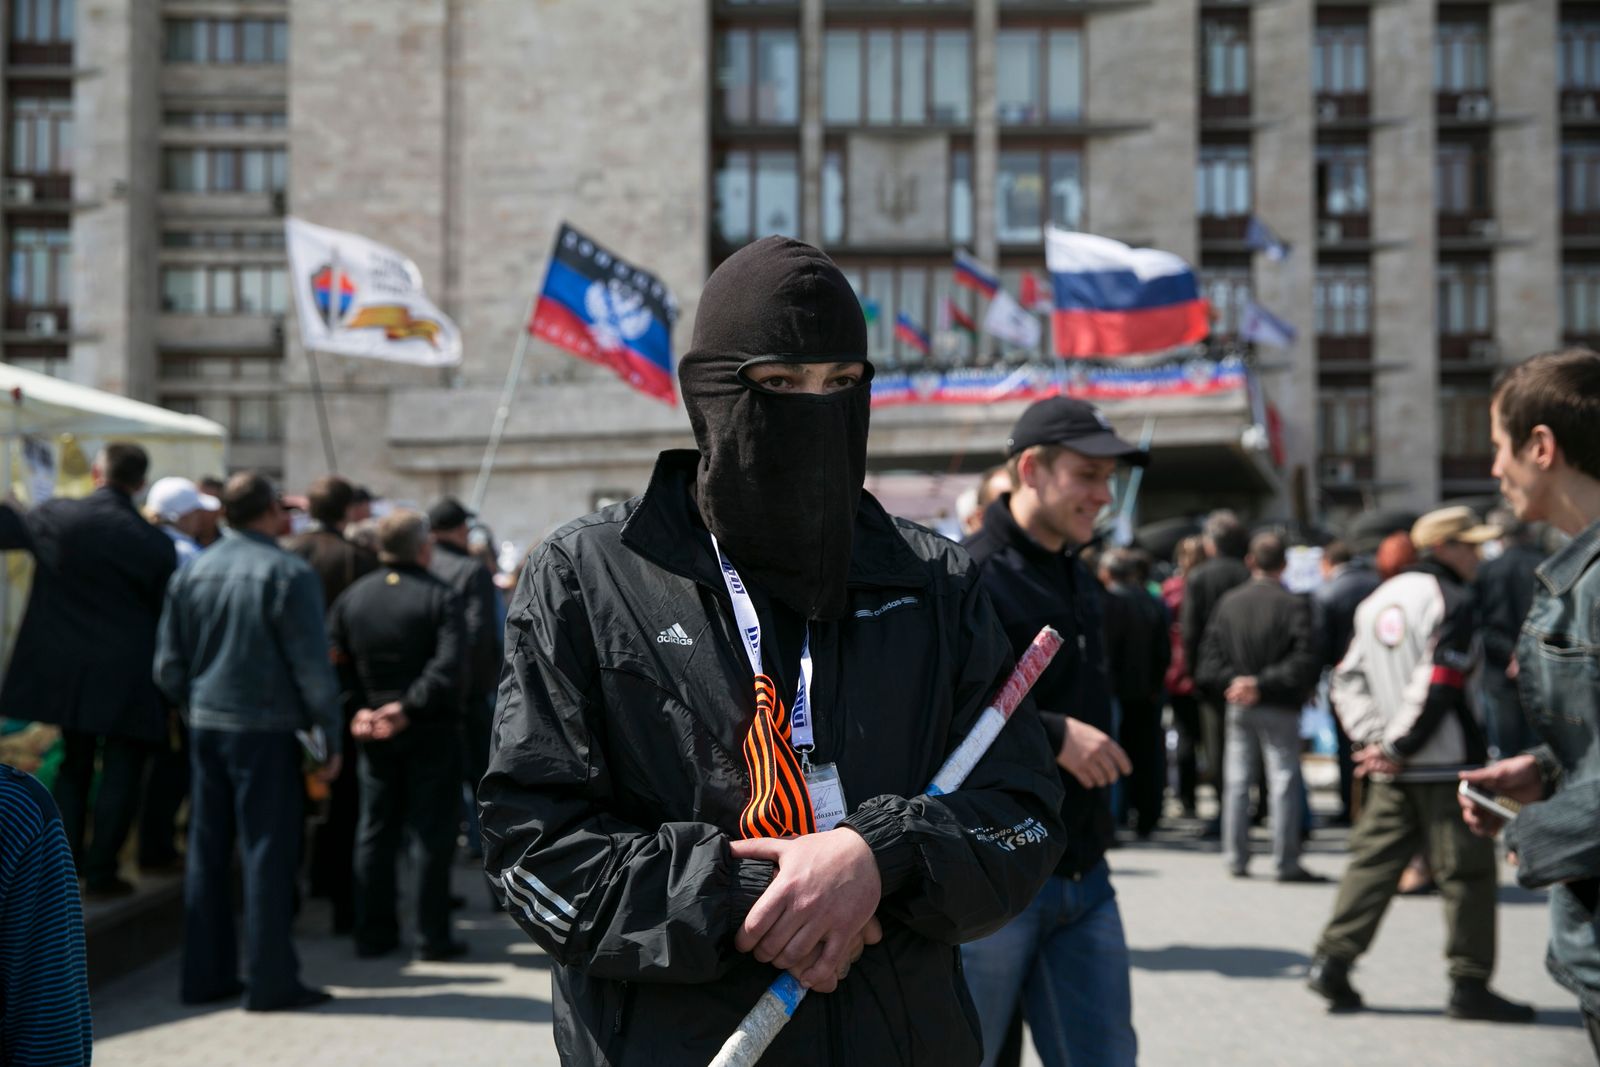 رجل مقنع مؤيد لروسيا يقف في حراسة بالقرب من حاجز خارج مبنى حكومي إقليمي في دونيتسك شرقي أوكرانيا، 21 أبريل 2014 - REUTERS